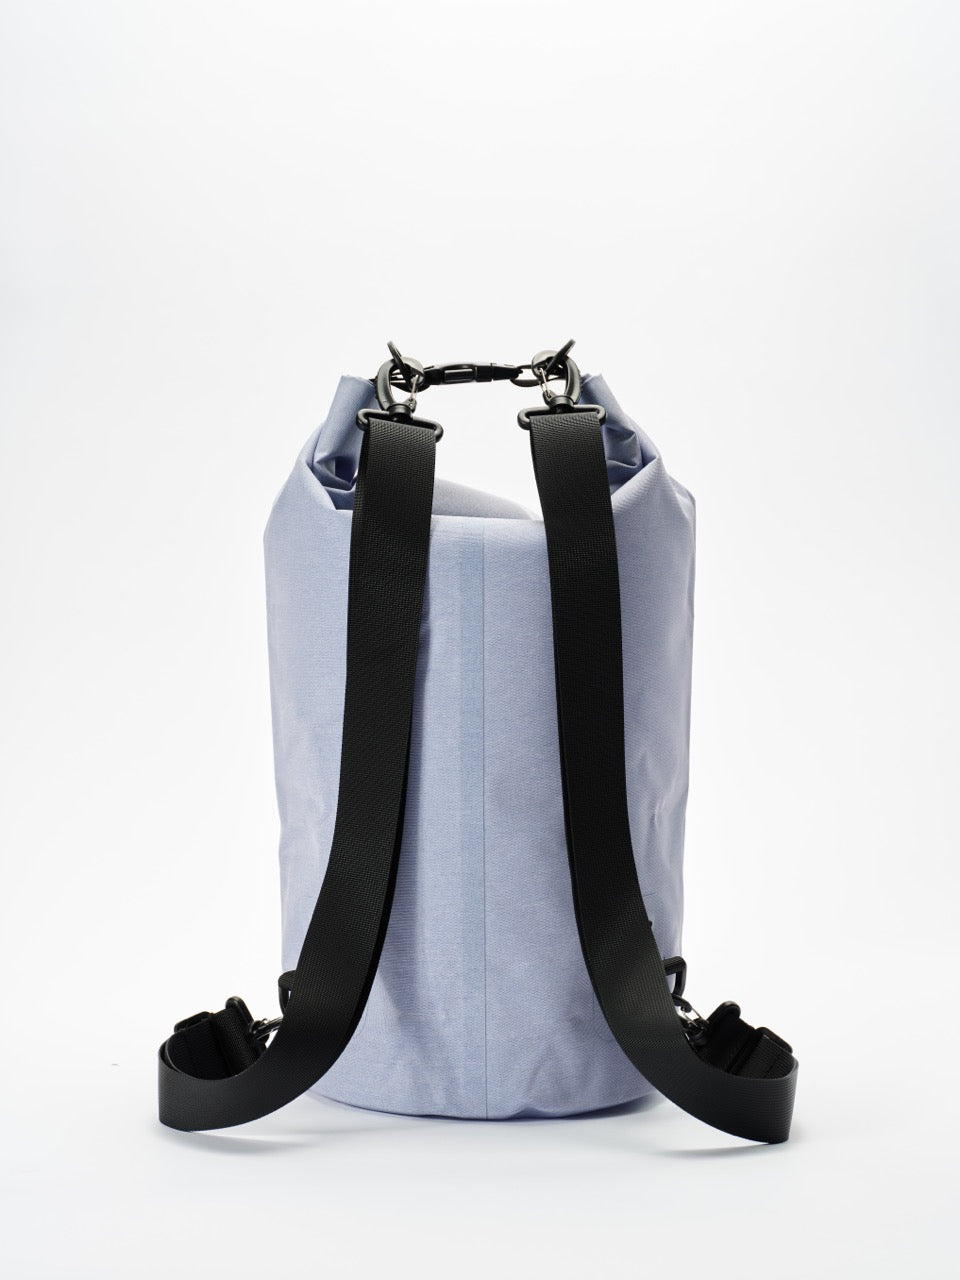 Rhy Böötle - 20 Liter Dry Bag - Seastar Purple